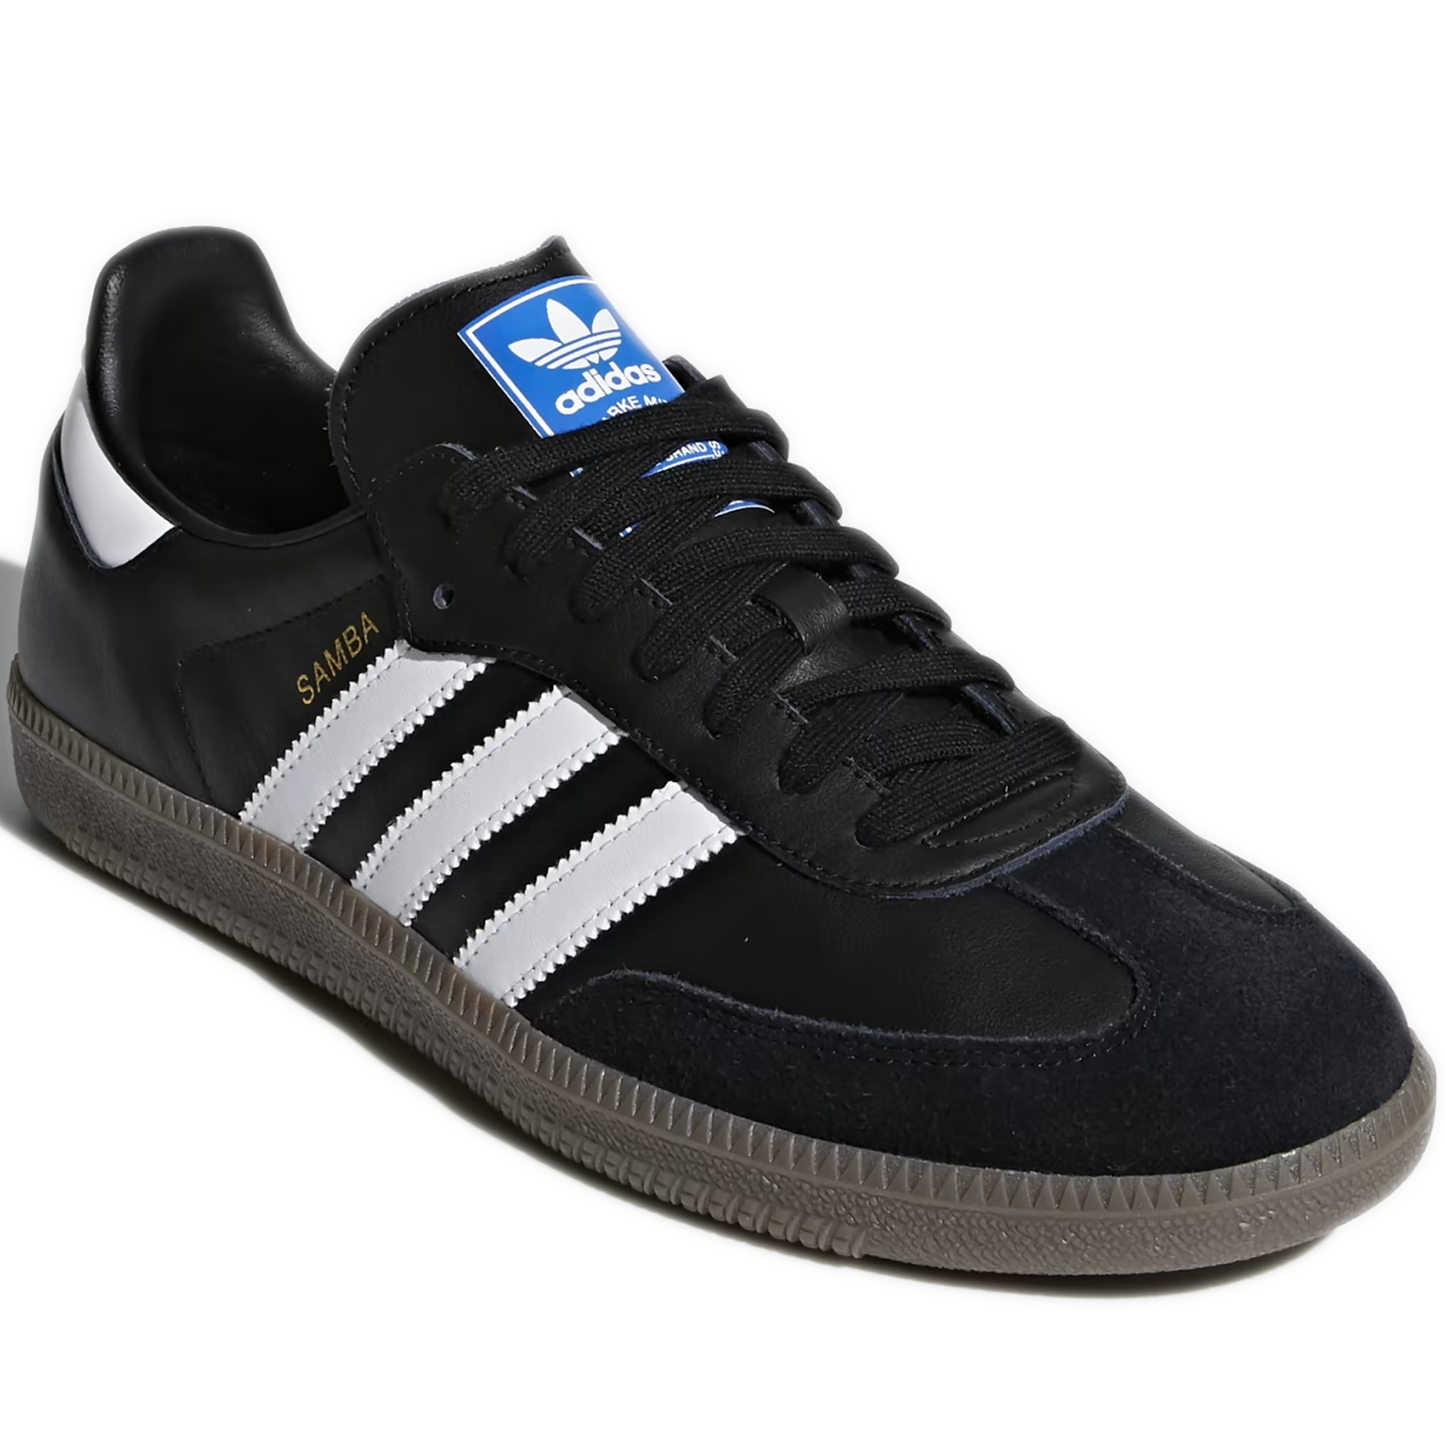 Men's Adidas Samba OG Shoes - Black/ White/ Gum